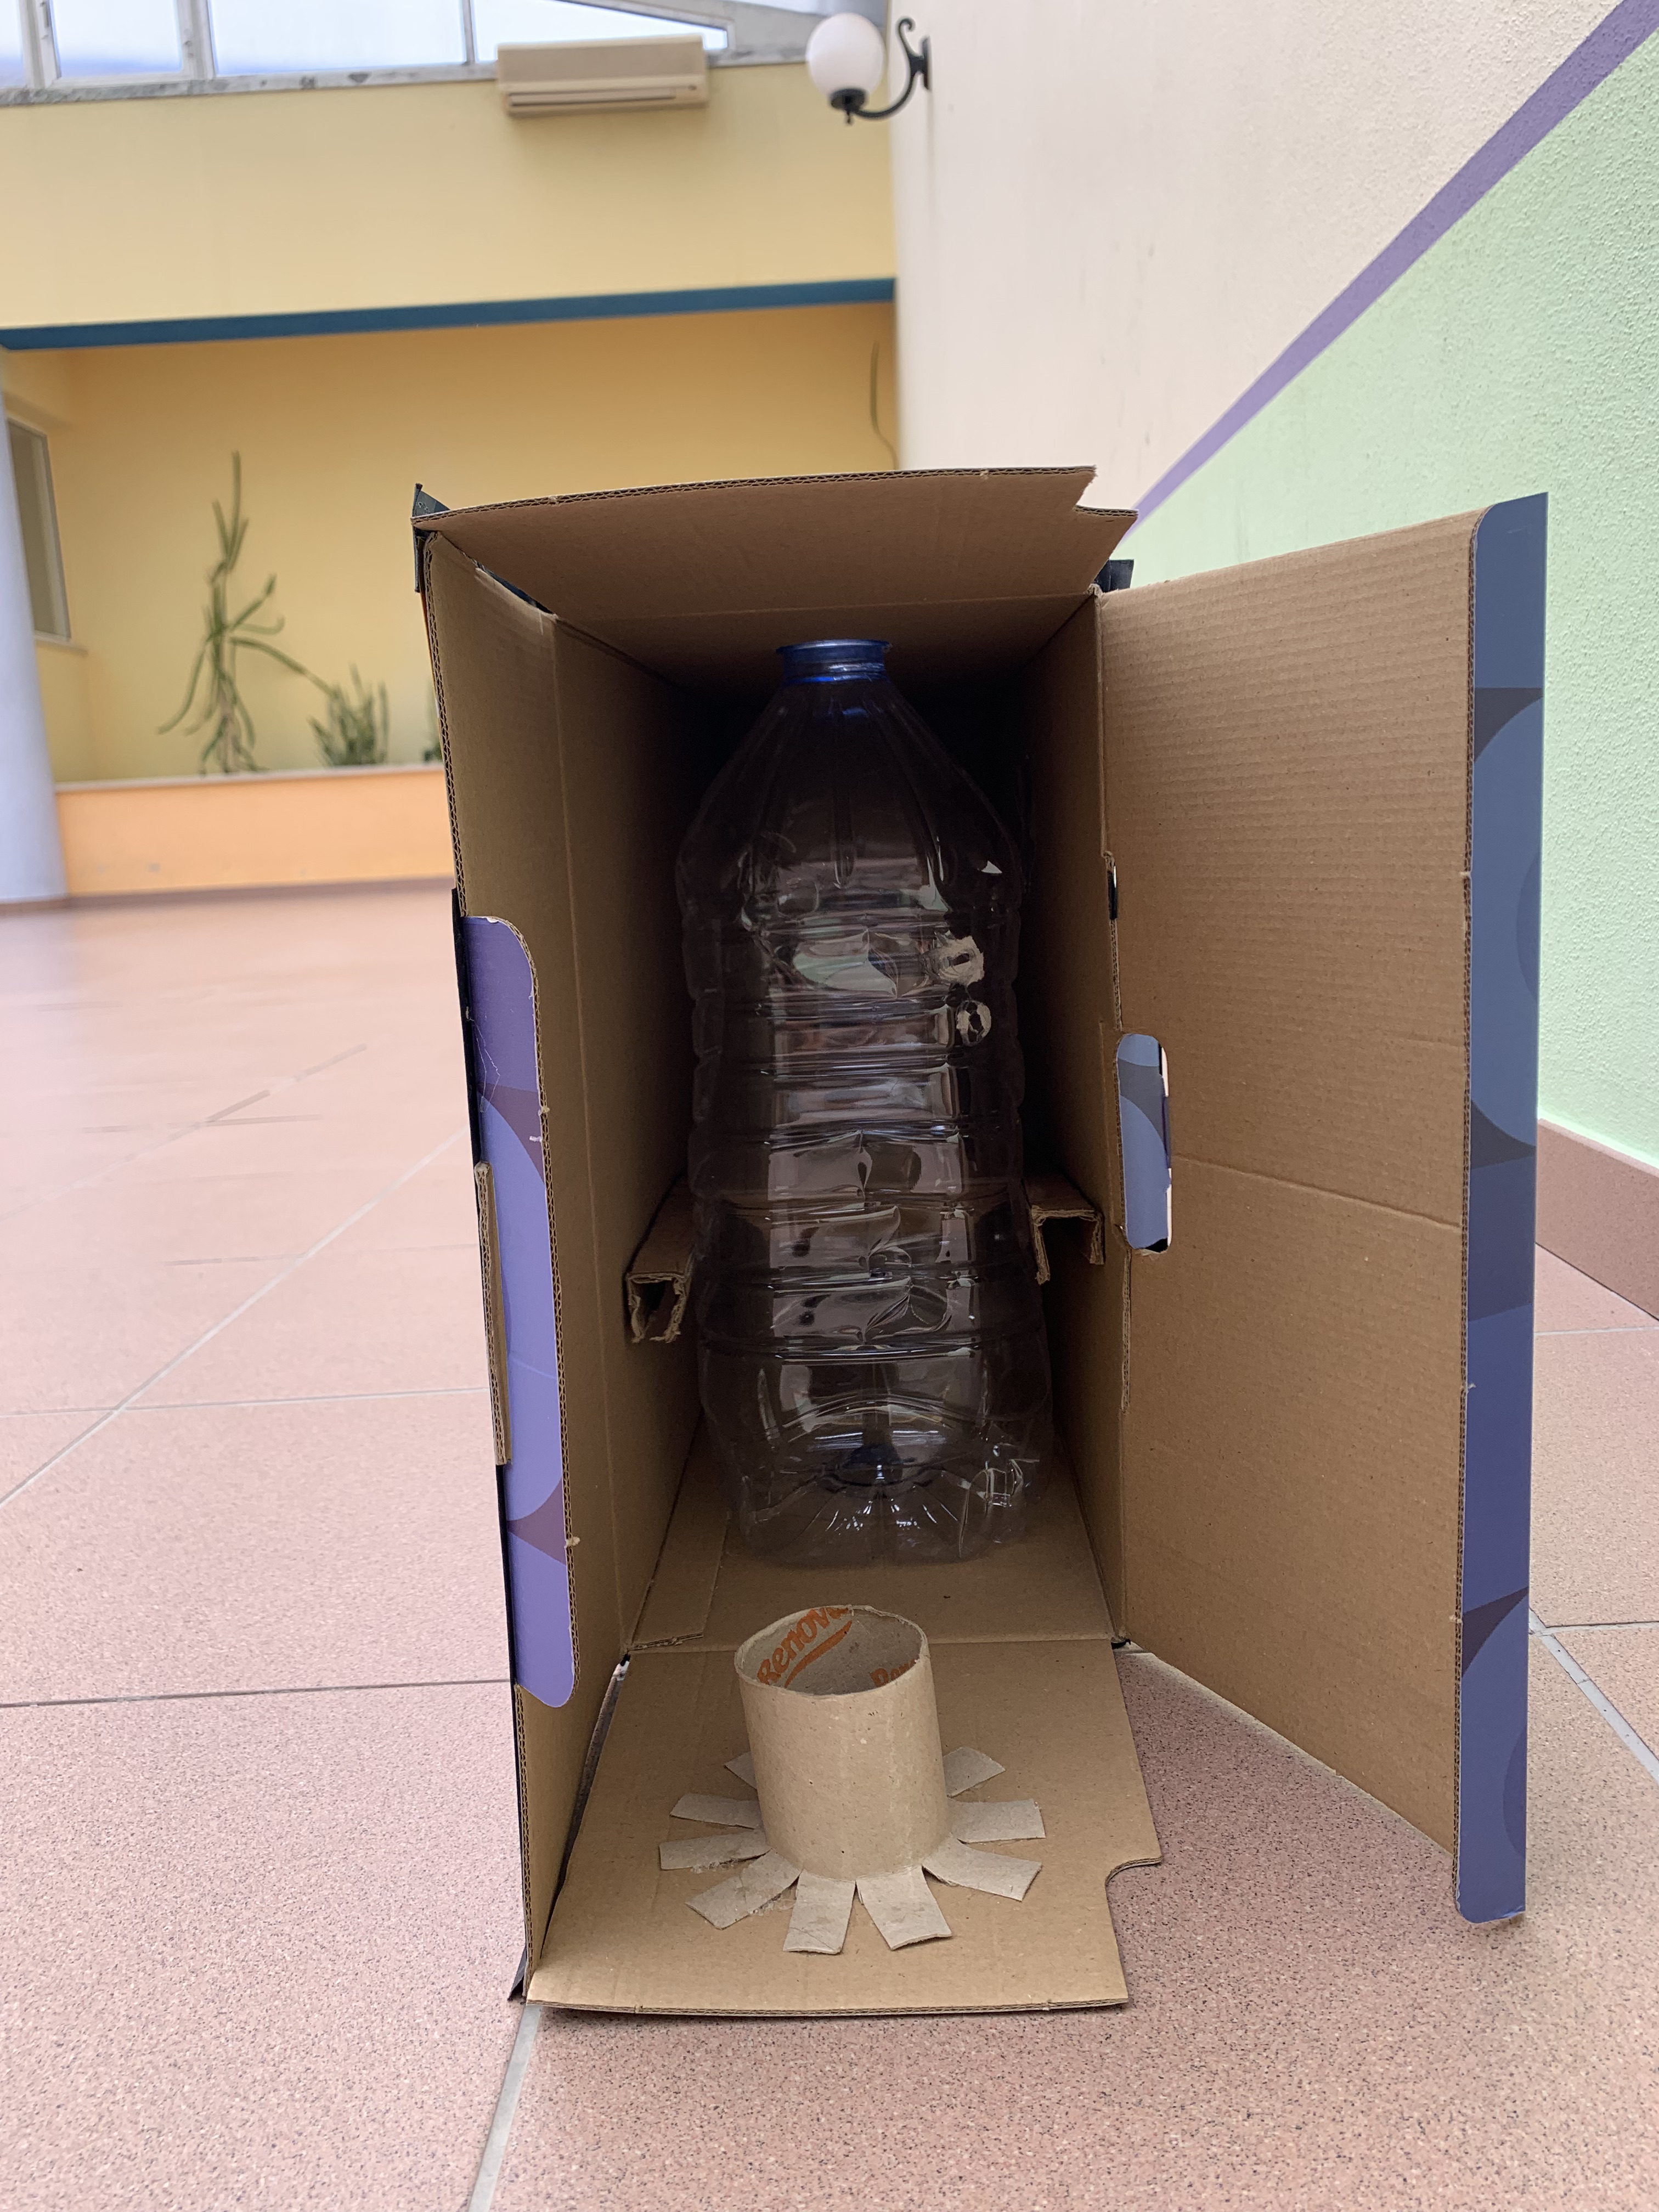 Para a armazenagem das pilhas foram utilizados garrafões de água de 5 litros colocados em baixo das aberturas onde são depositadas as pilhas, e são sustentados no lugar por pedaço de papelão nas laterais.